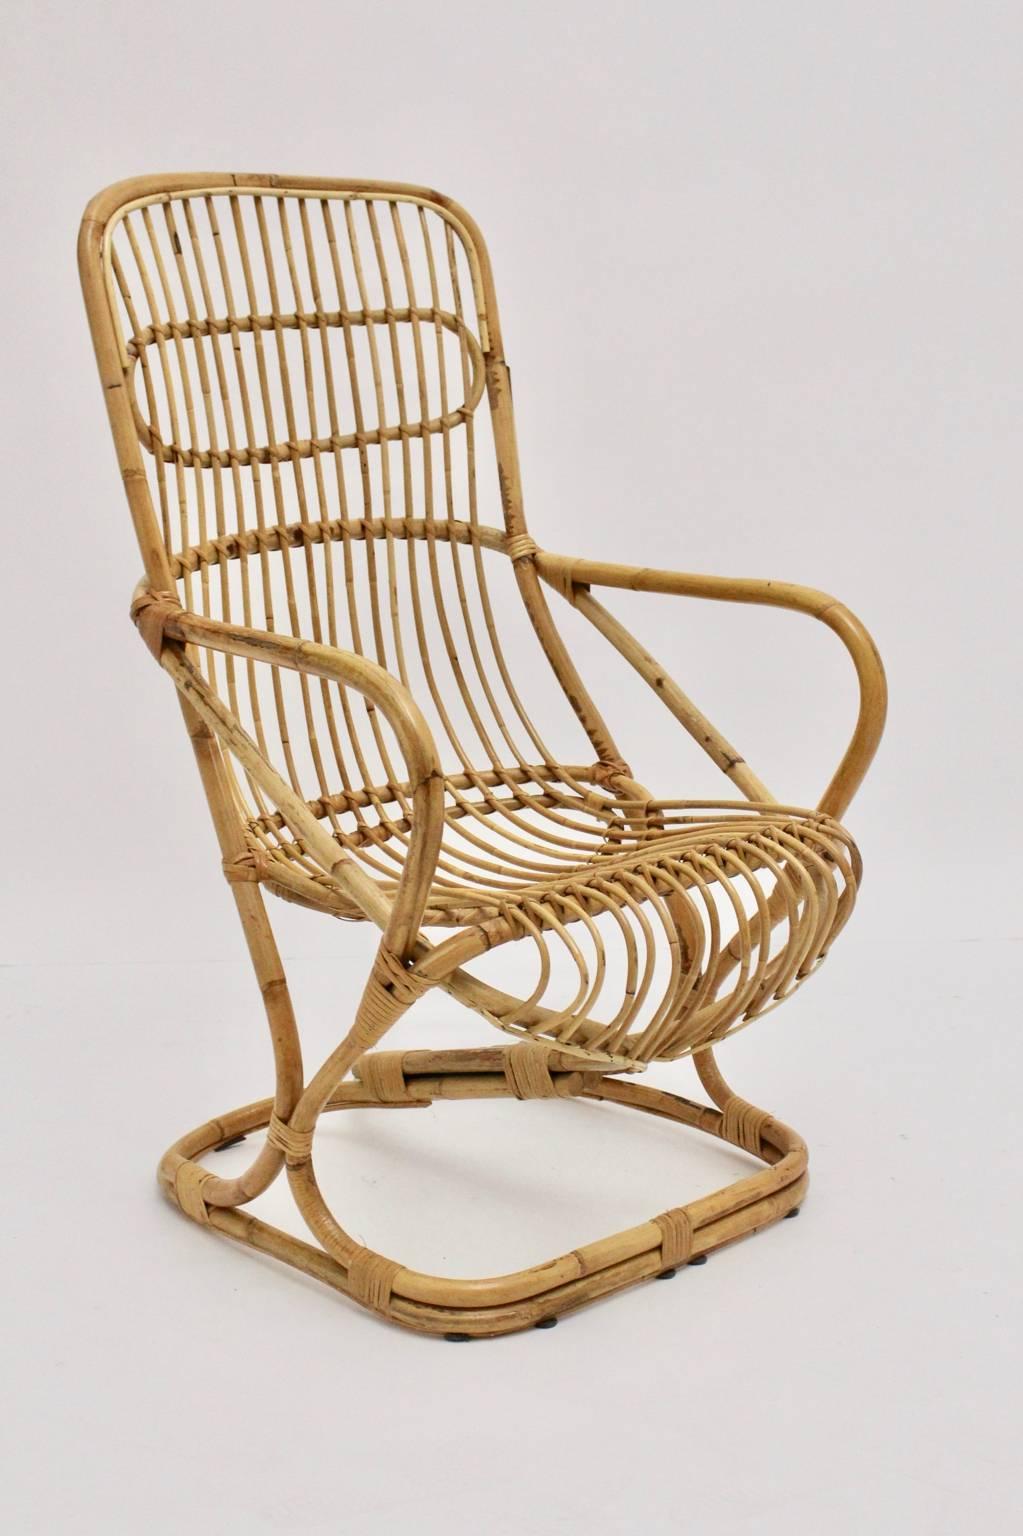 Diese Mitte des Jahrhunderts moderne Vintage Bambus hohe Rückenlehne Sessel Italien, 1960er Jahre ist sehr bequem.
Der Zustand ist sehr gut mit sehr geringen Alters- und Gebrauchsspuren.
ca. Maße:
Breite: 62 cm
Tiefe: 73,5 cm
Höhe: 107 cm
Sitzhöhe: